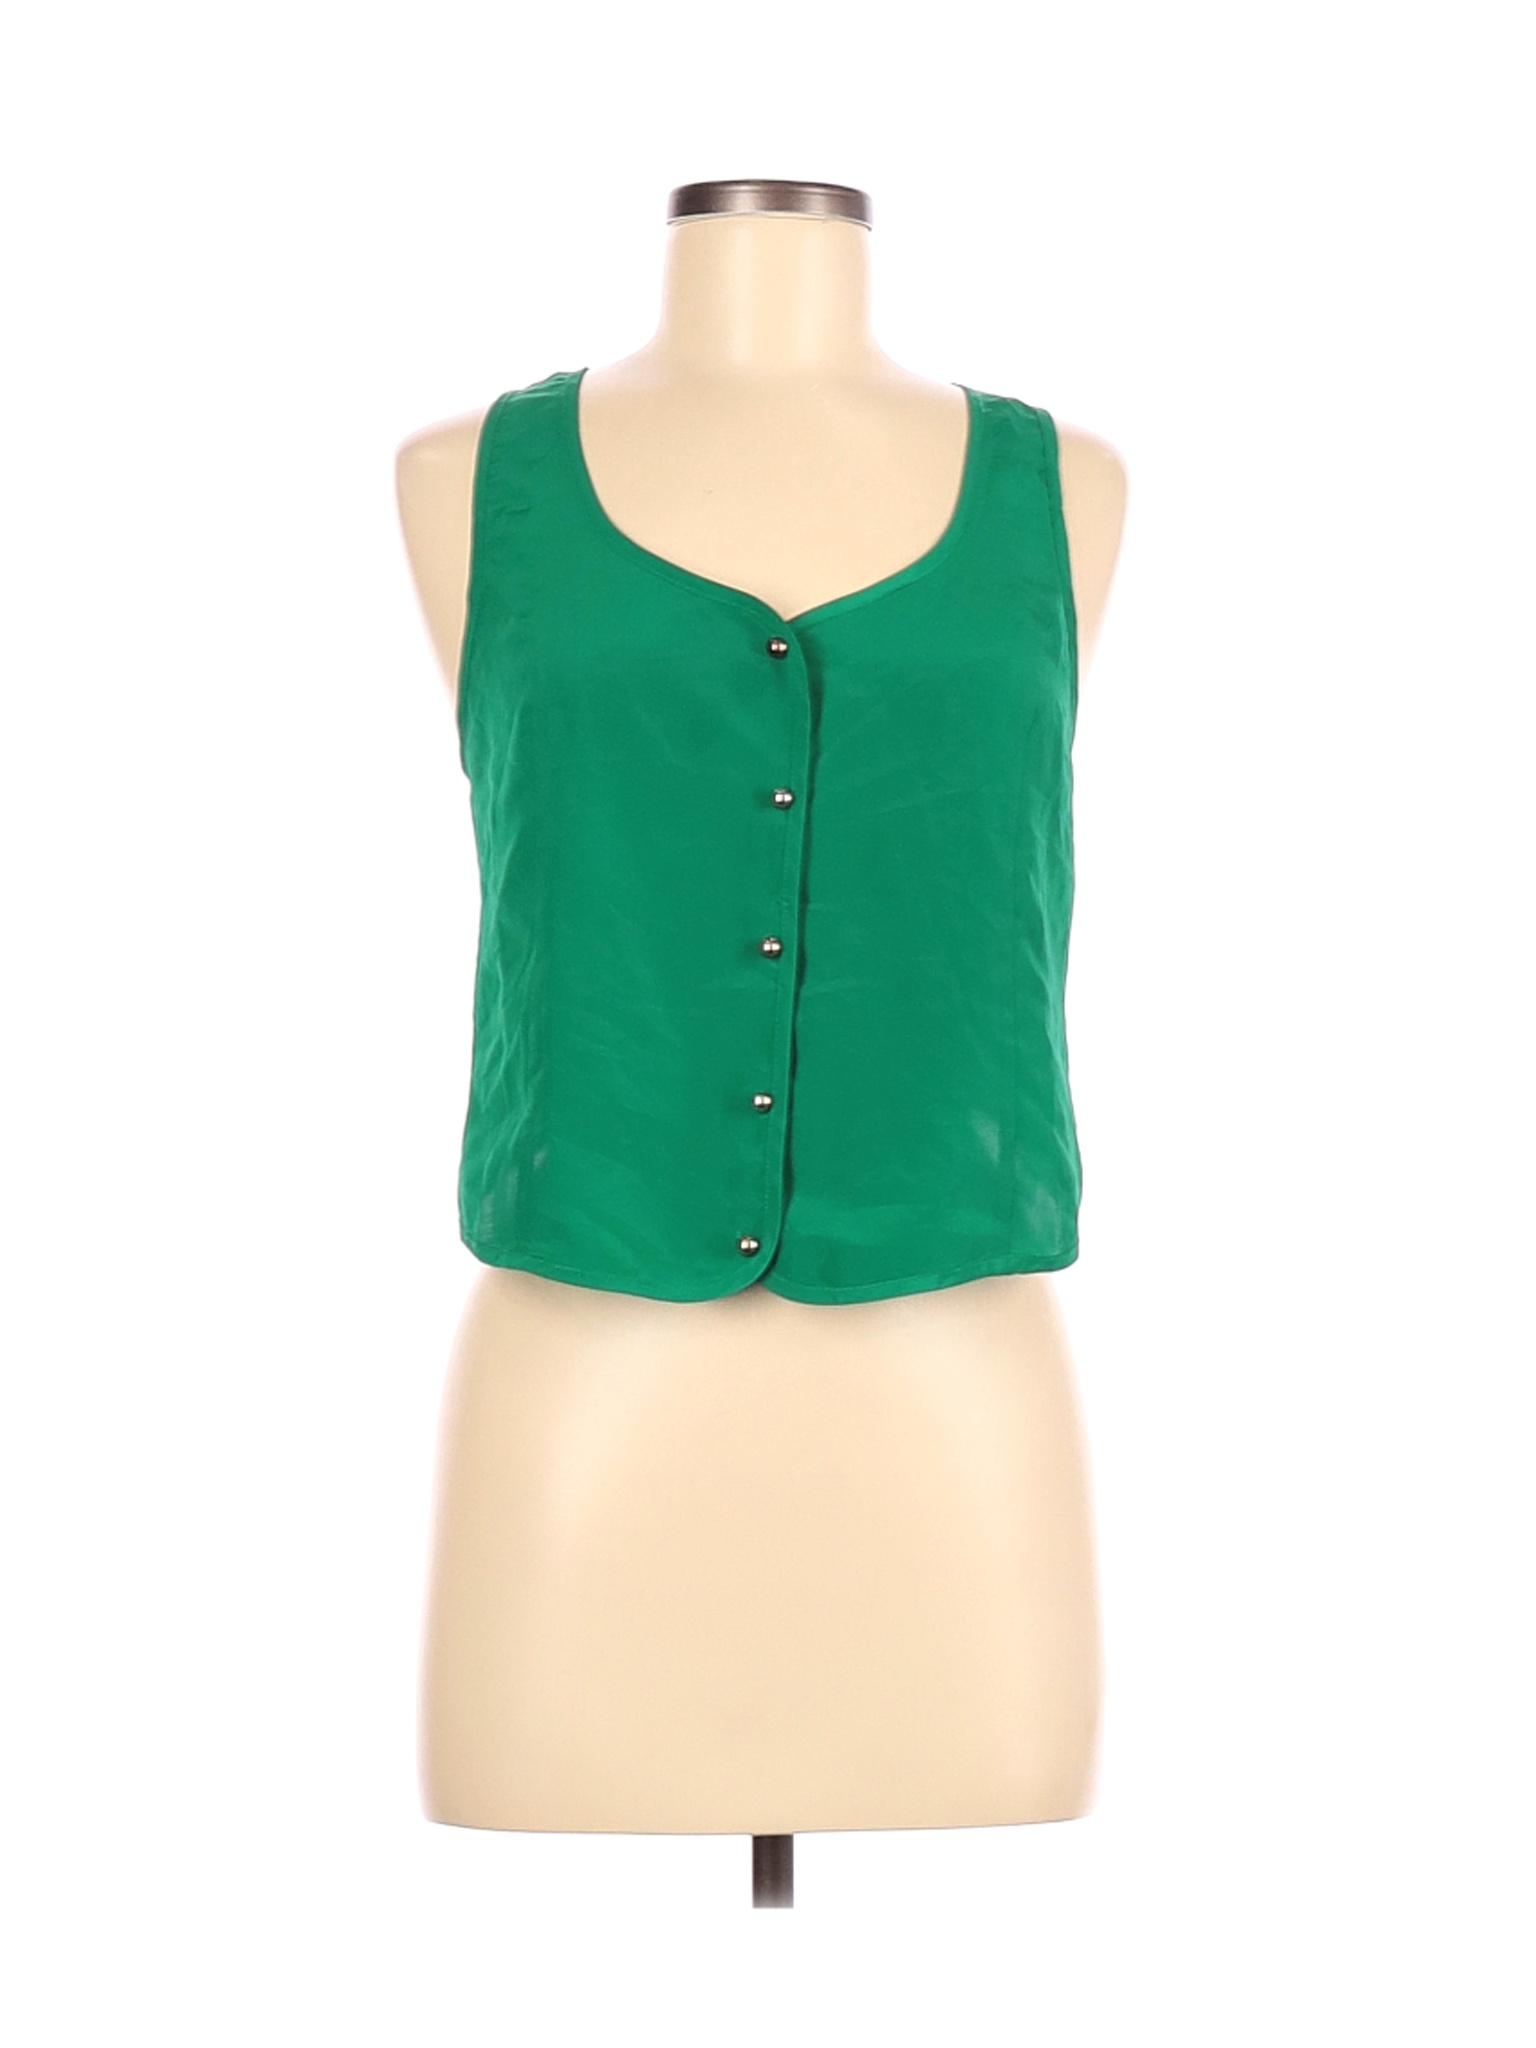 ASOS Women Green Sleeveless Blouse 6 | eBay